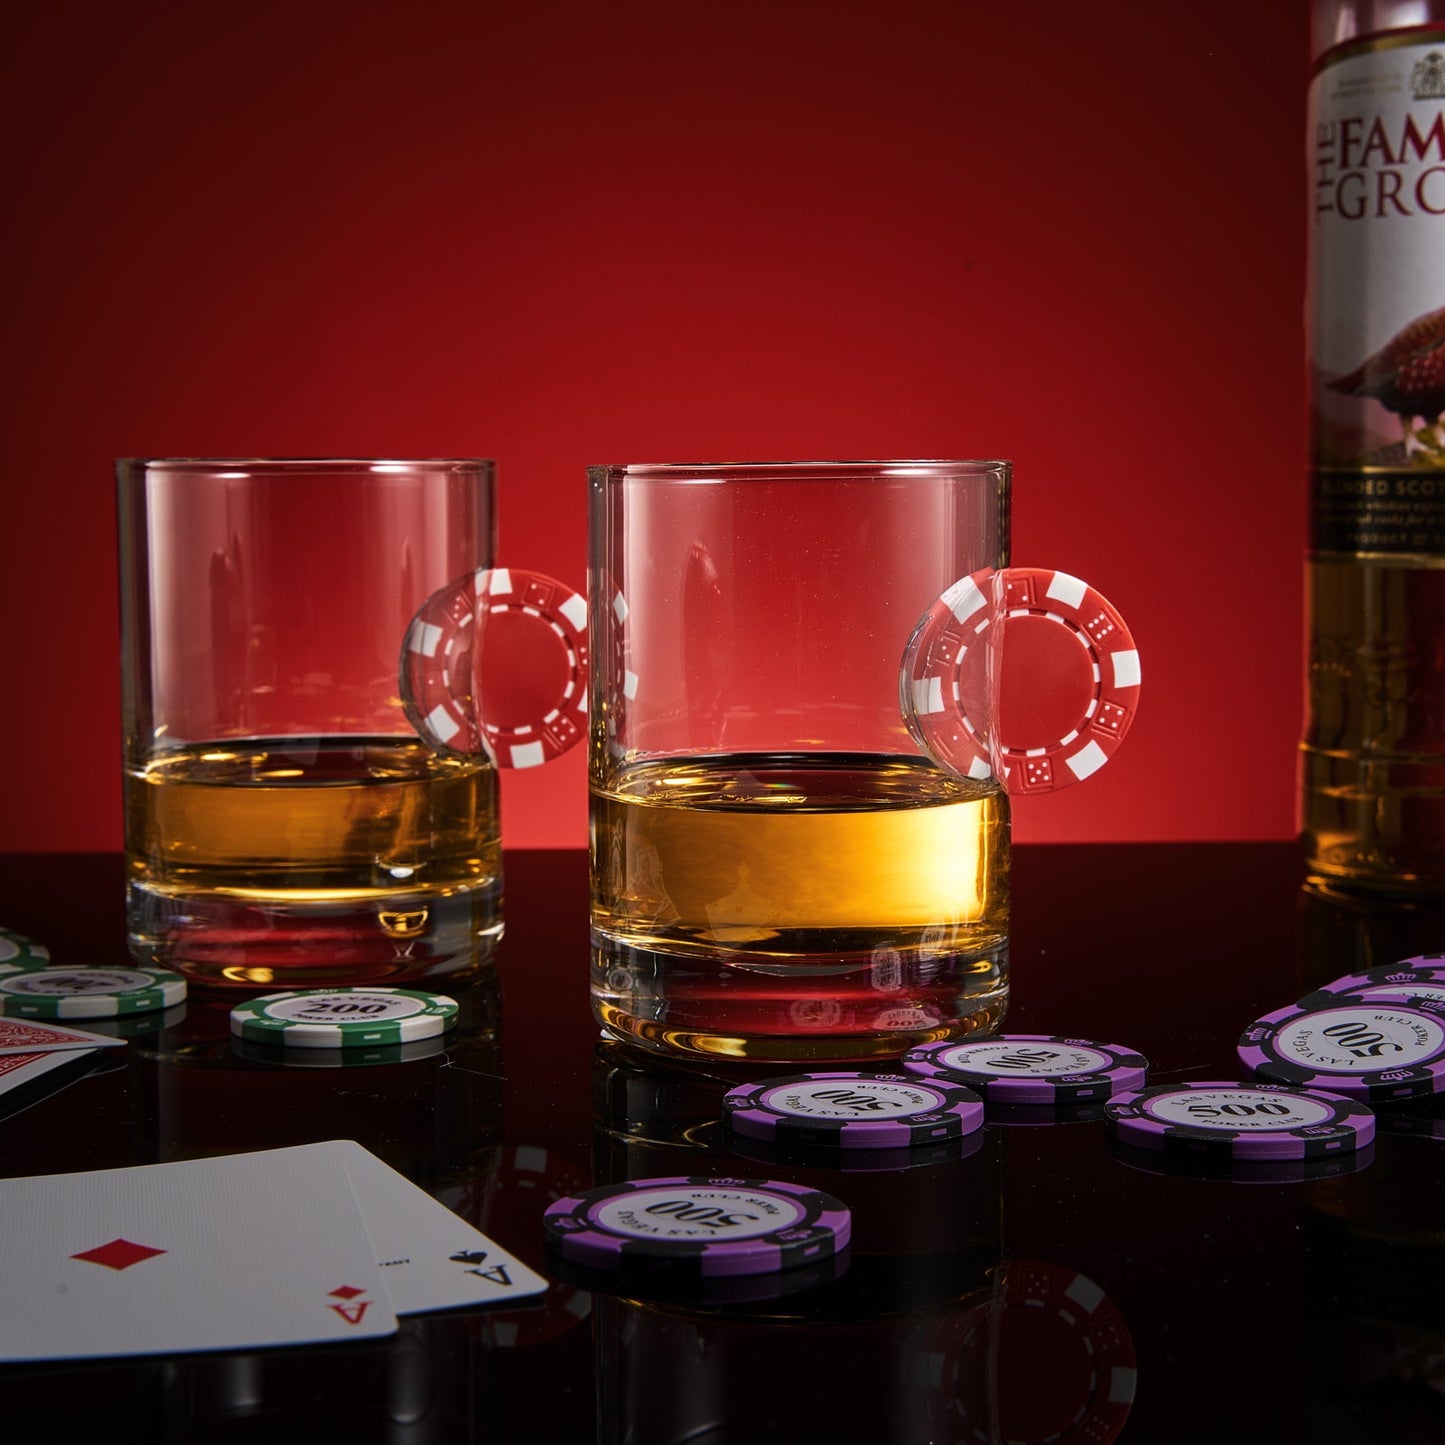 Poker Chip Whiskey & Wine Glasses | Set of 2